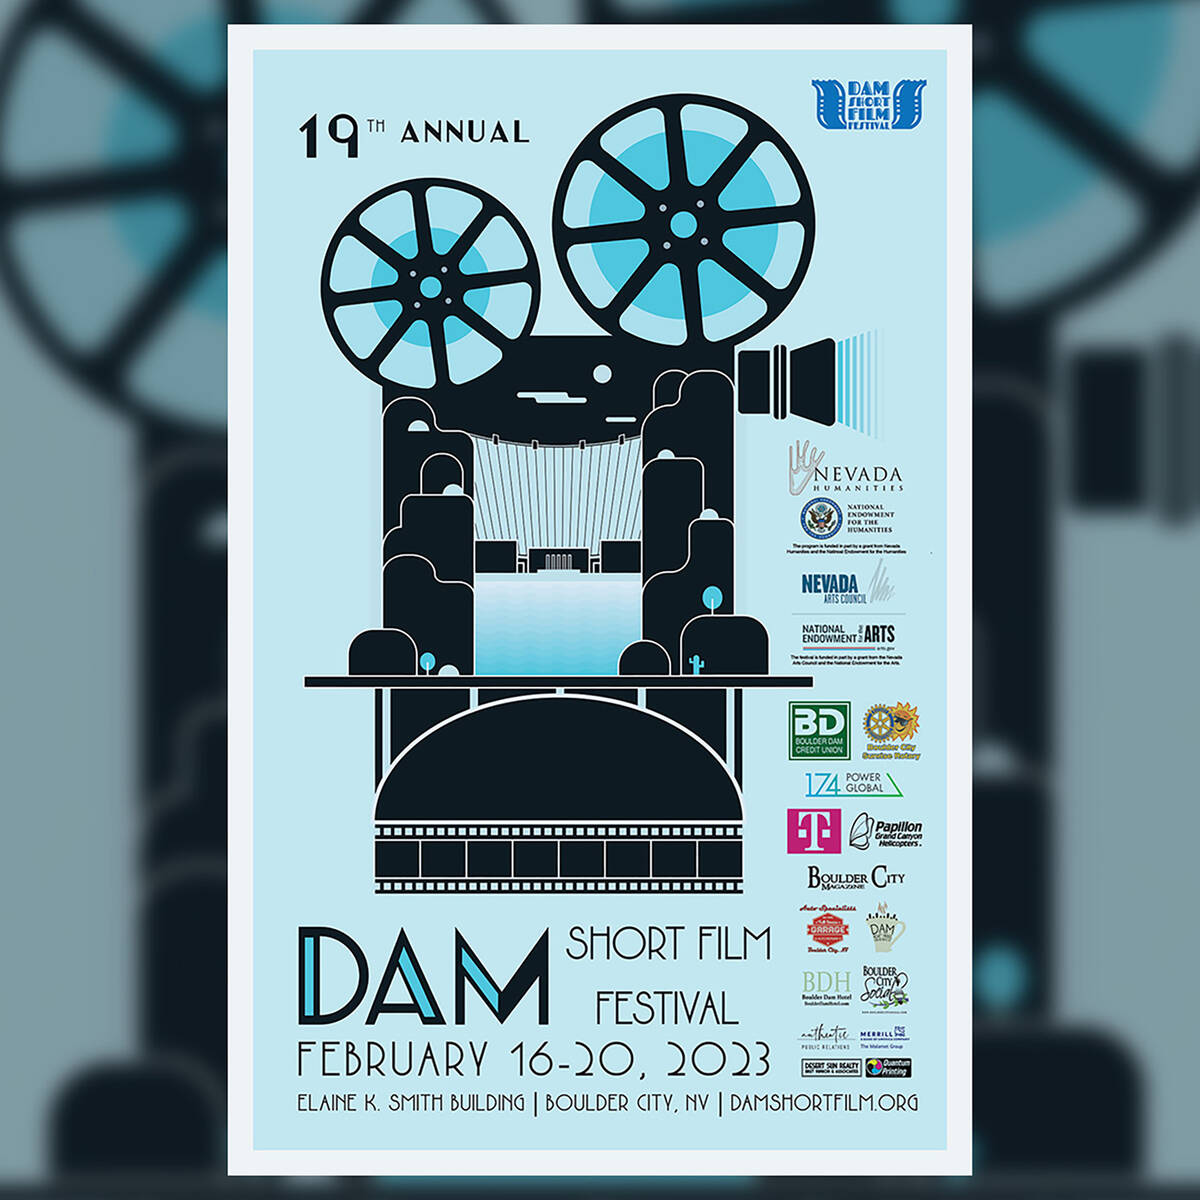 (Dam Short Film Festival)